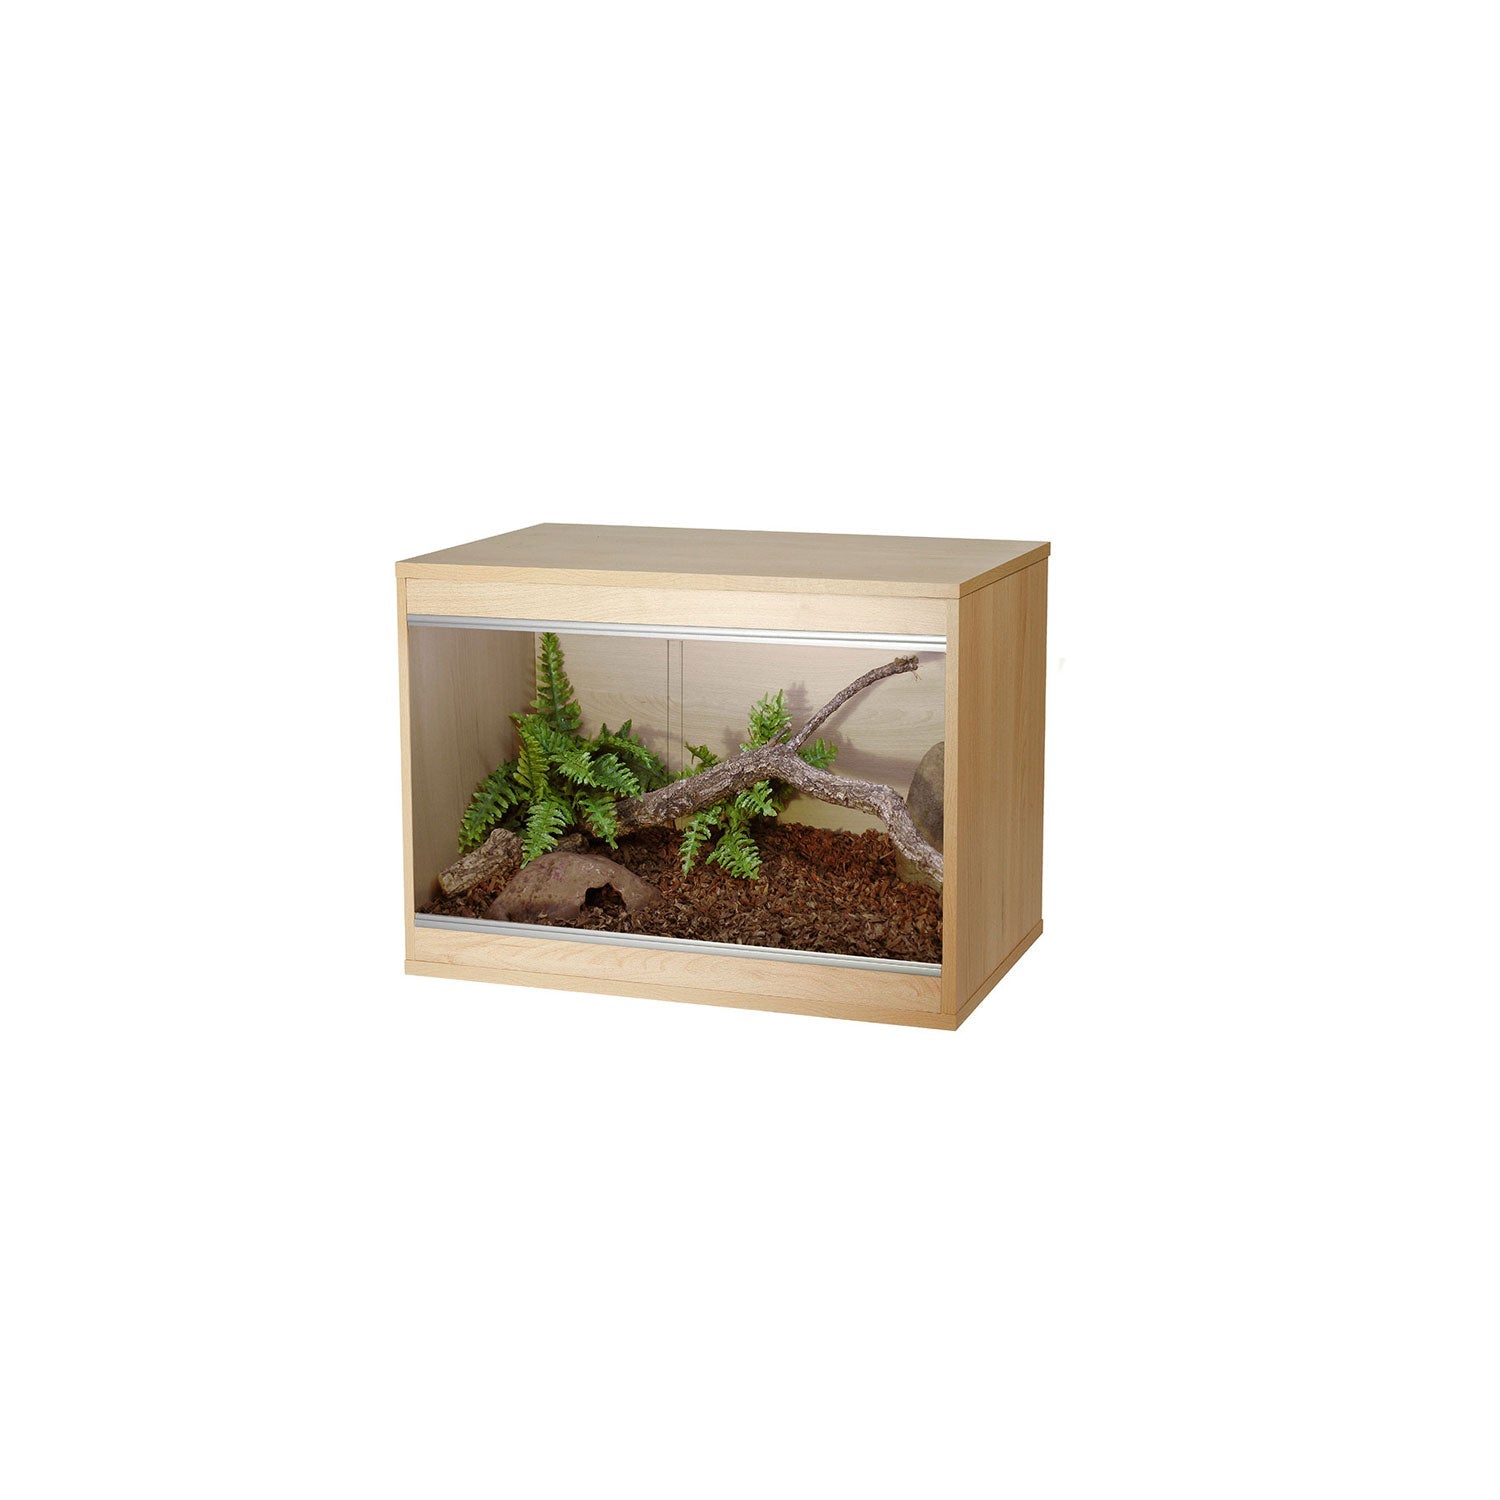 Vivexotic Repti-Home Vivarium - Small Oak 57.5 x 37.5 x 42cm - Charterhouse Aquatics